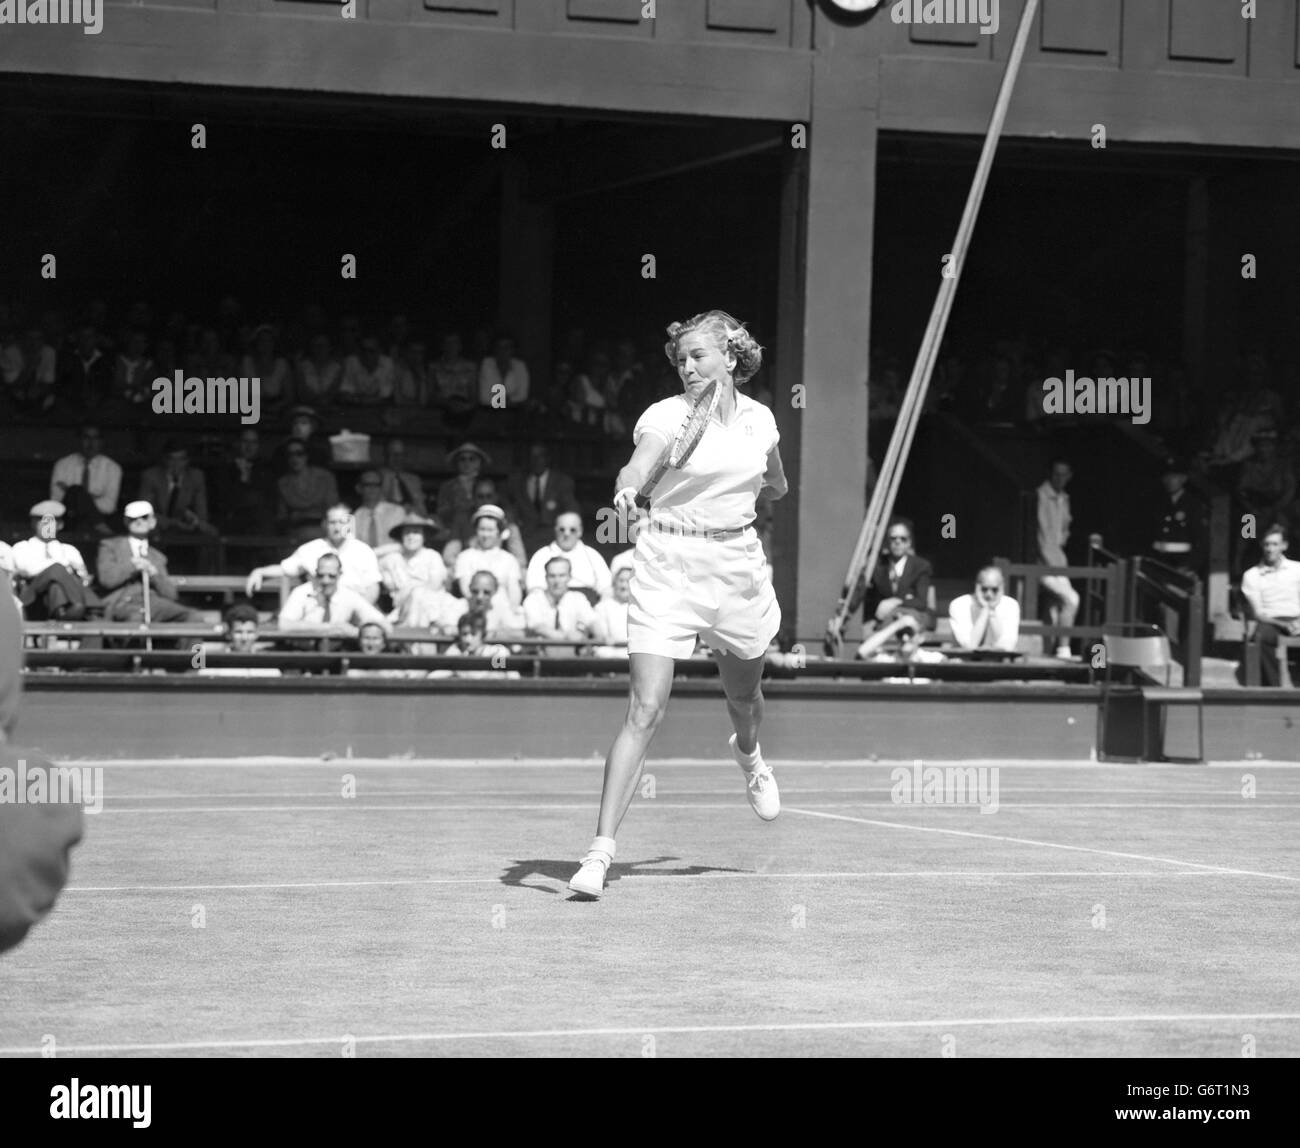 Tennis - Wimbledon - femmes célibataires.Louise Brod, de l'Amérique, en action à Wimbledon, où elle a battu Brewer des Bermudes. Banque D'Images